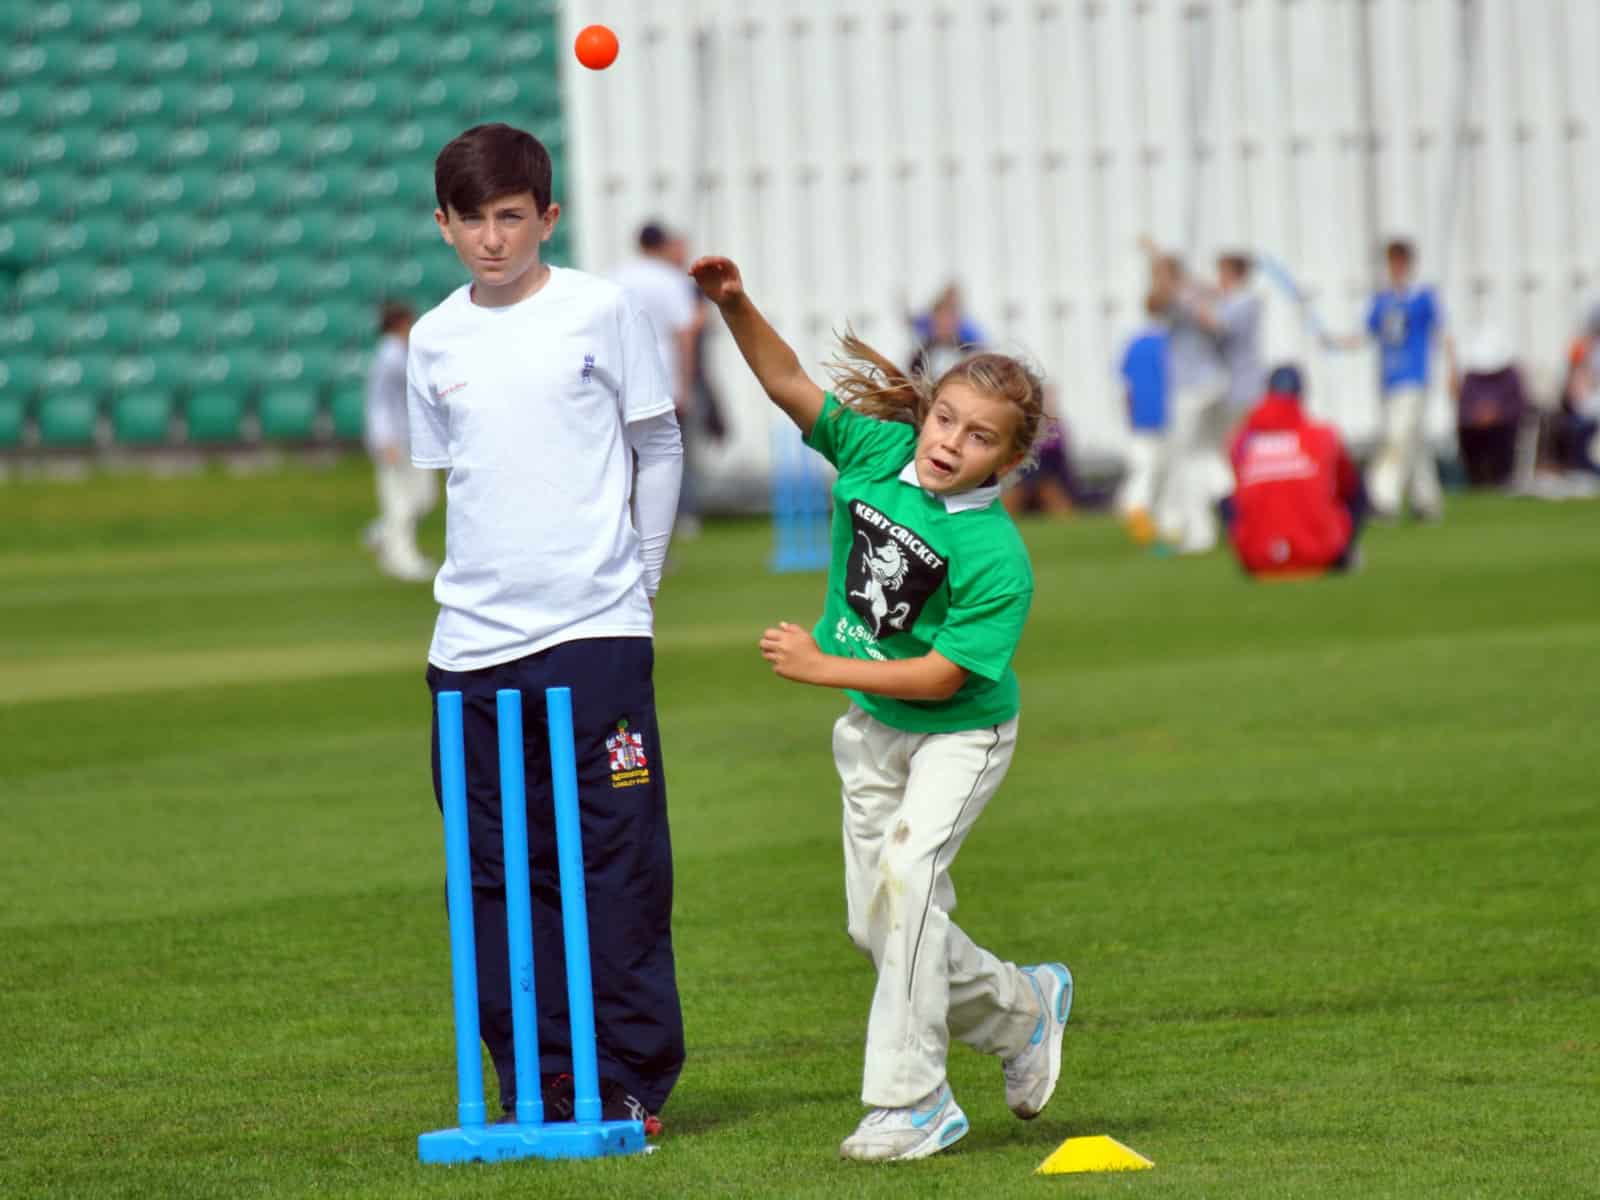 Kent County Cricket Club Mini Super 8s school event